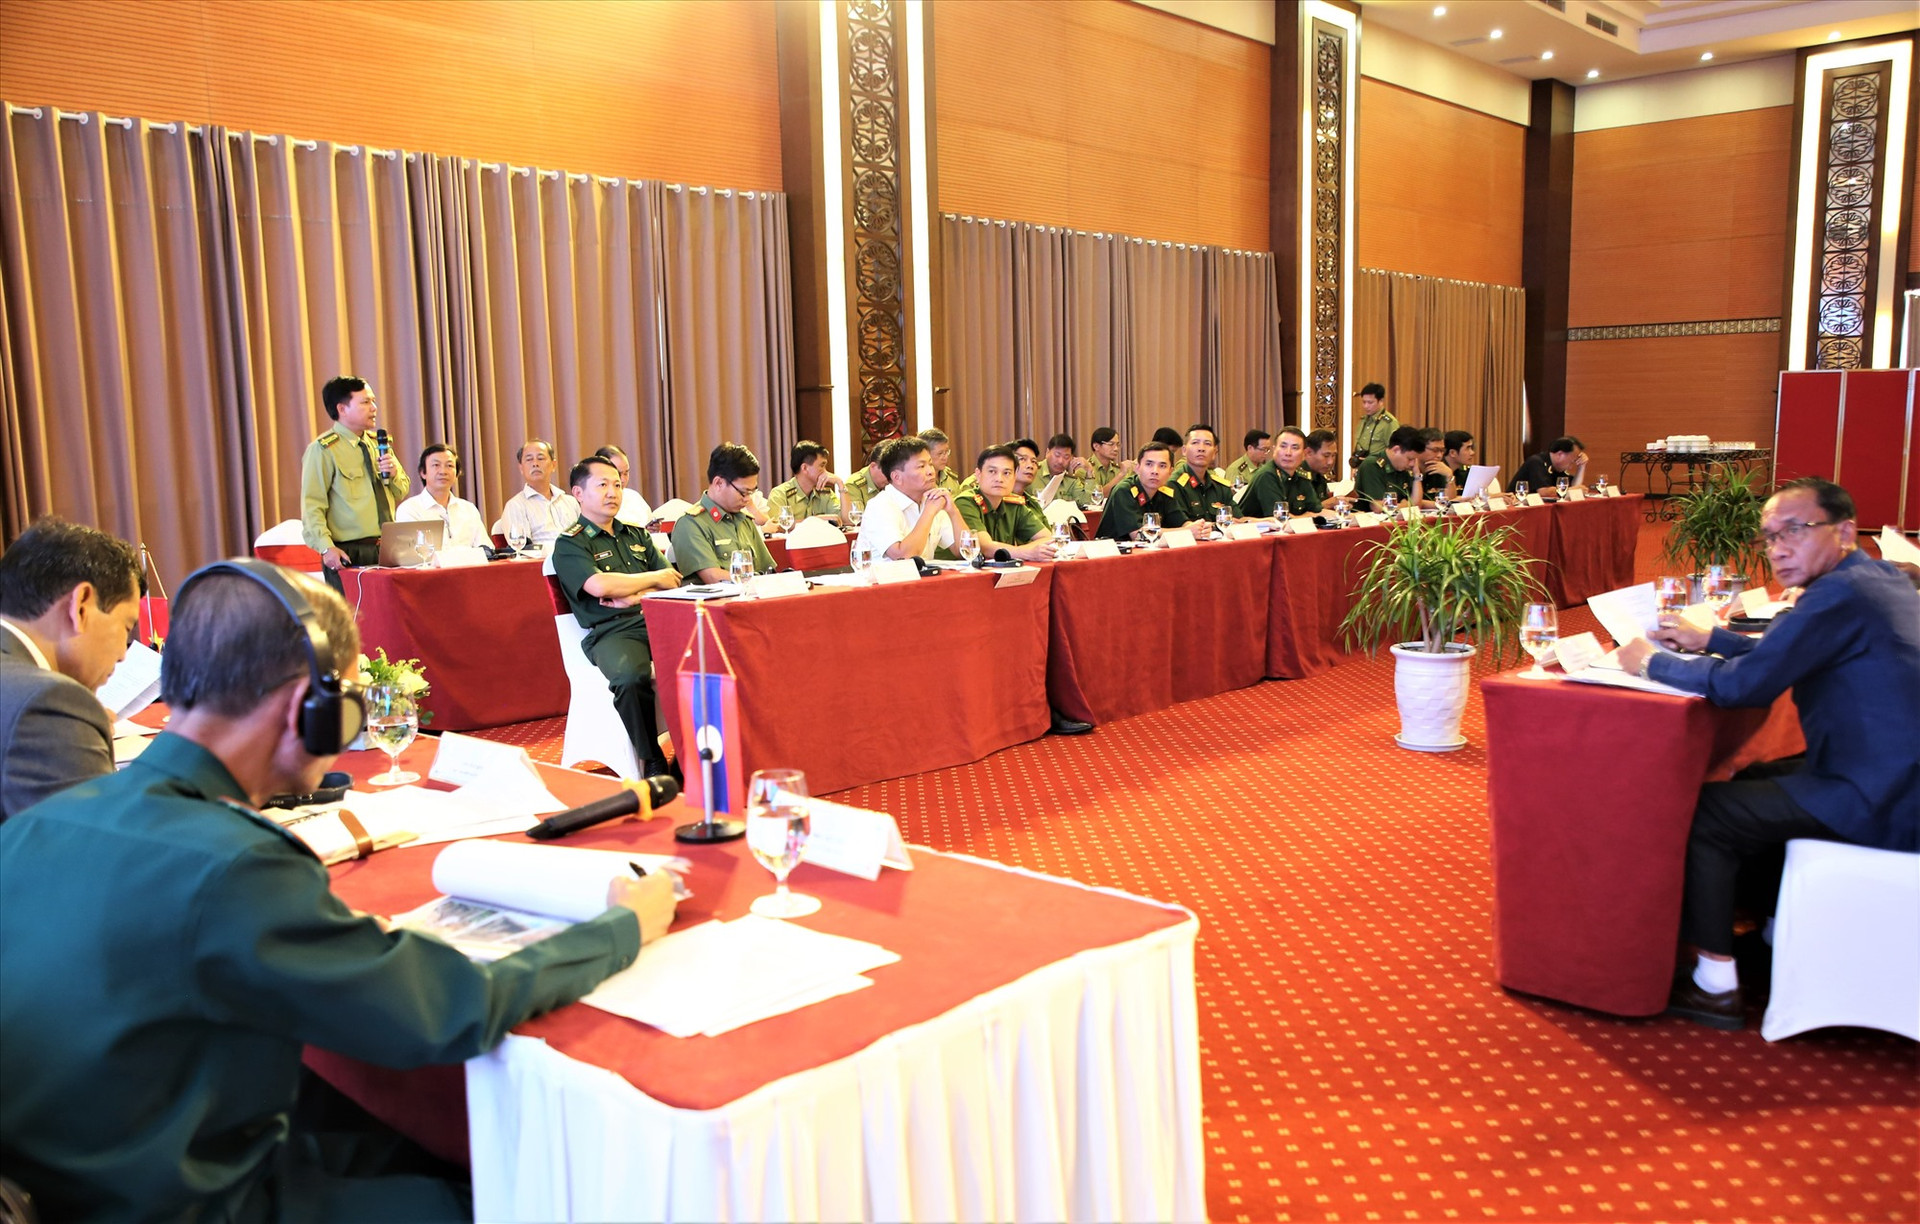 Đông đảo đại biểu thuộc các lực lượng và địa phương khu vực biên giới hai tỉnh Quảng Nam và Sê Kông tham dự. Ảnh: A.N